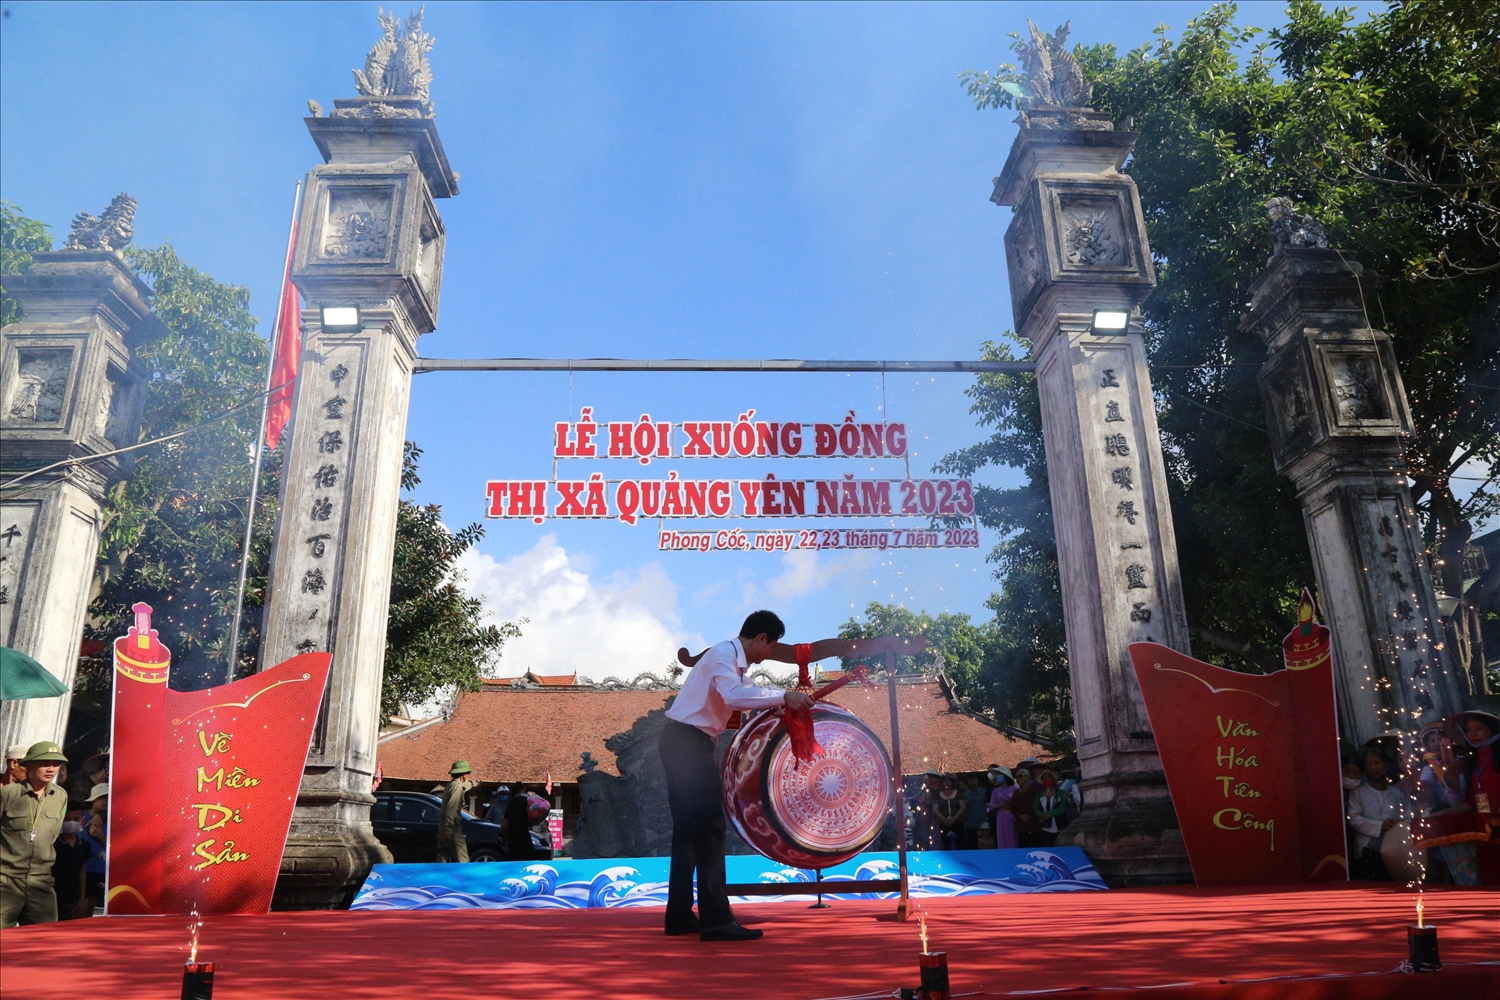 Bí thư Thị ủy Quảng Yên Hồ Văn Vịnh gióng trống khai hội xuống đồng năm 2023